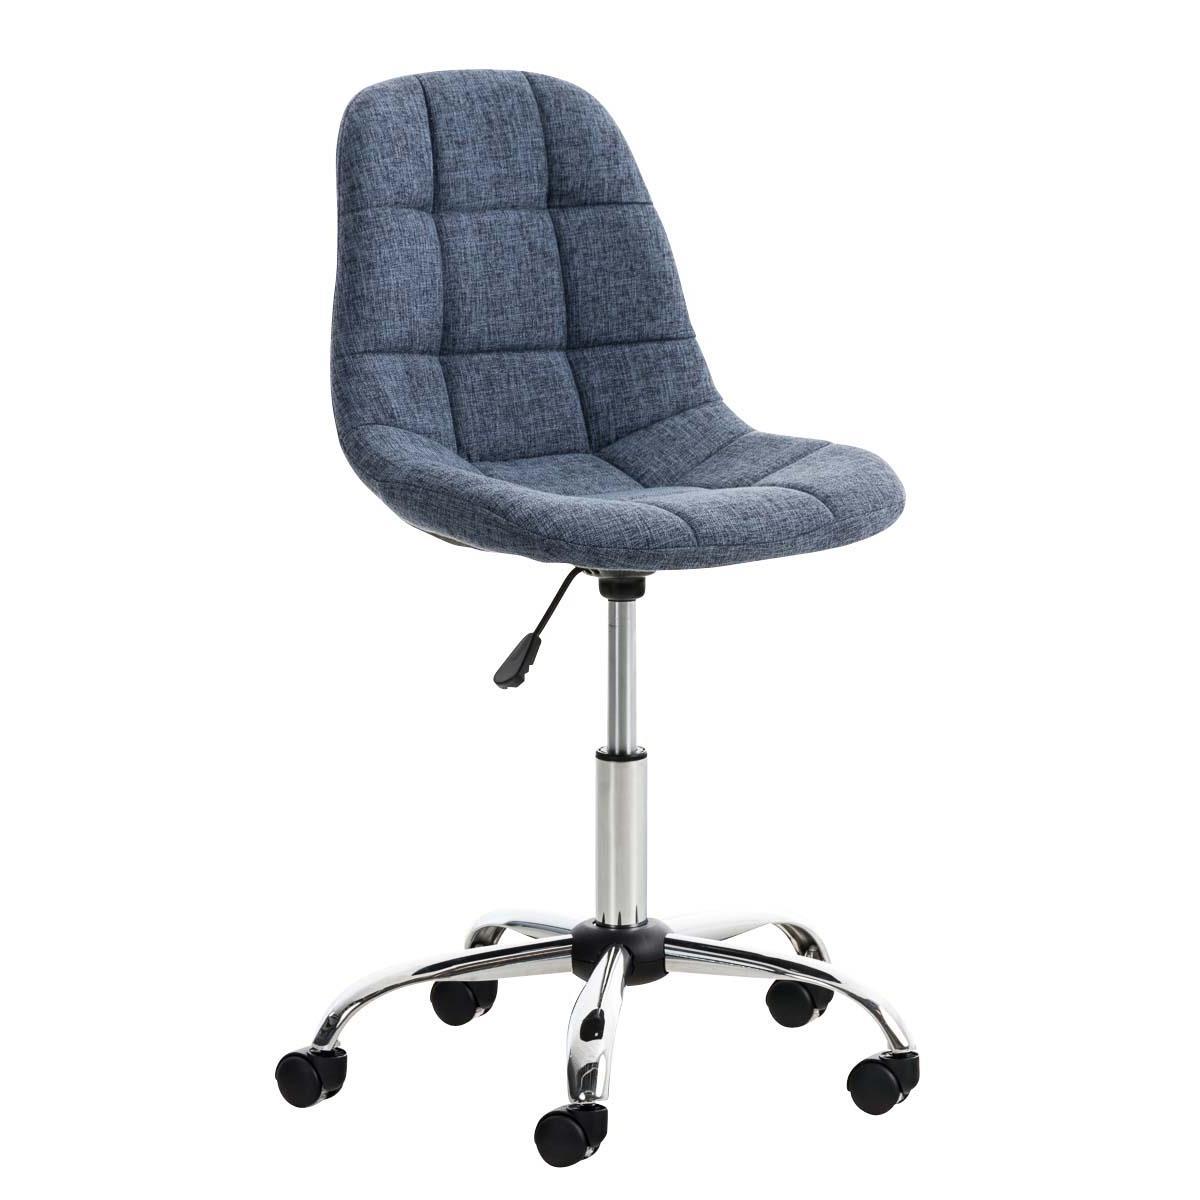 Chaise de bureau EMILY, Structure métallique, Design exclusif, revêtement Tissu, Bleu